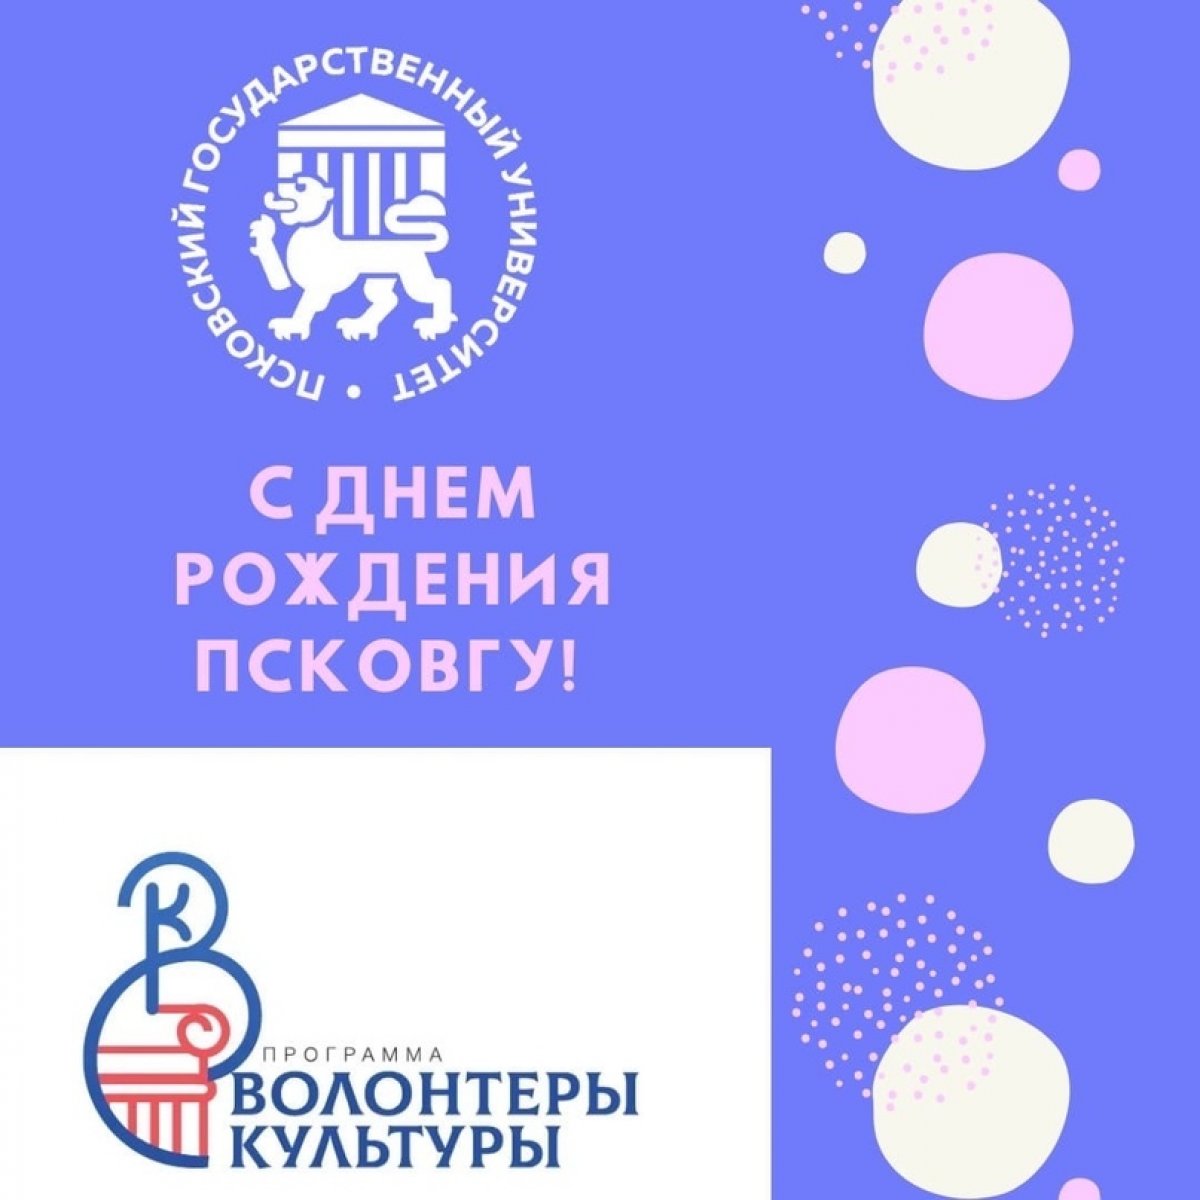 Поздравление от команды волонтеров культуры Псковской области: